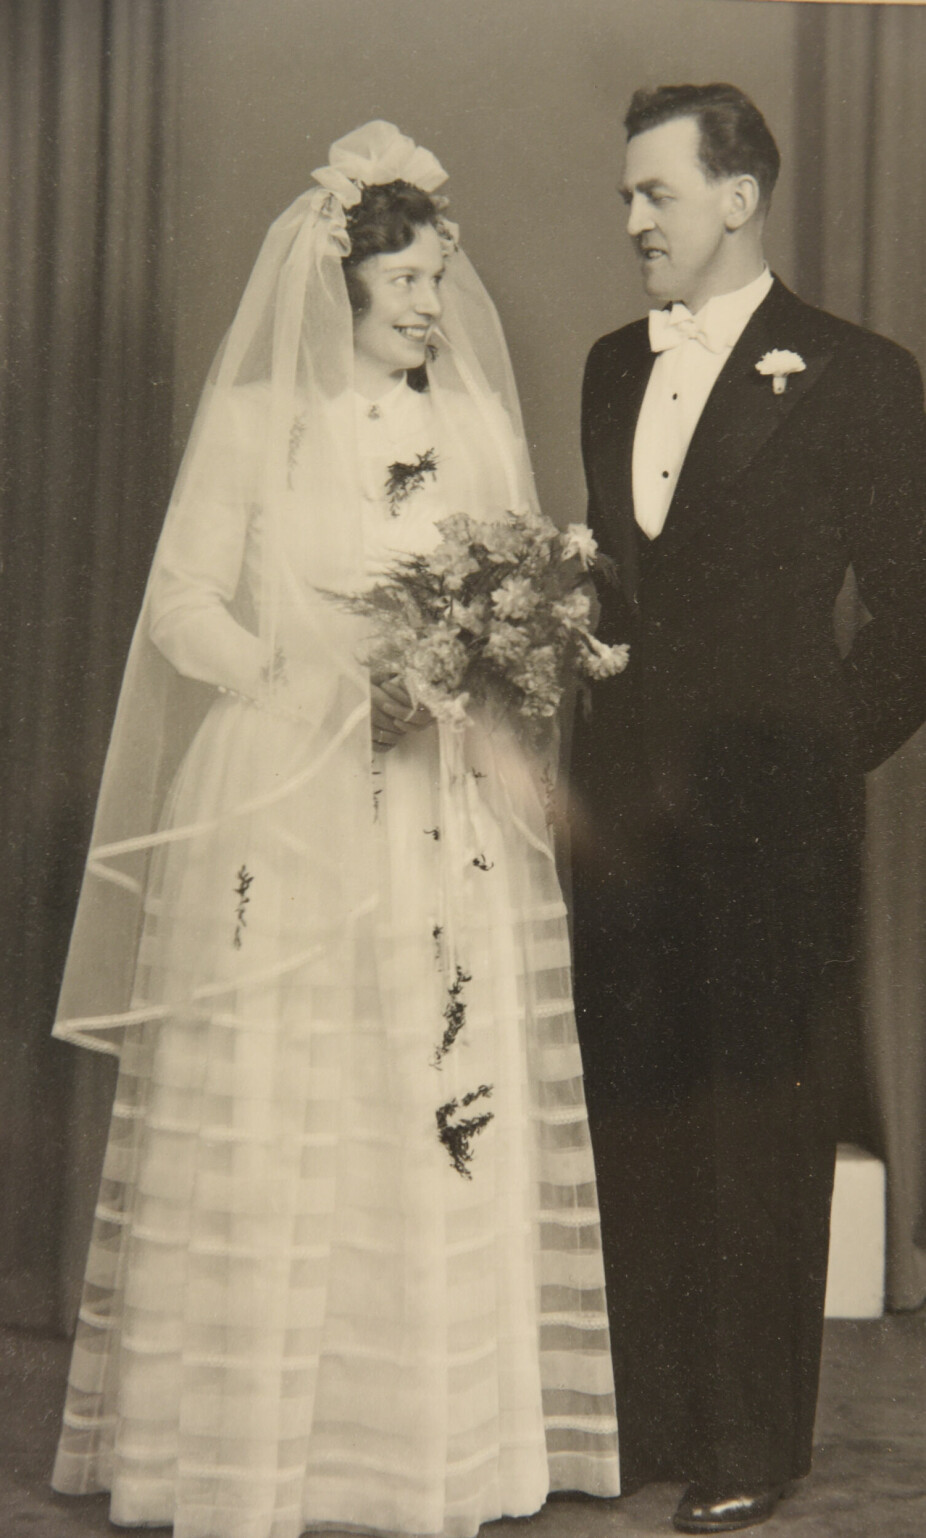 LANGT EKTESKAP: Ruth og Johannes giftet seg i februar 1952.